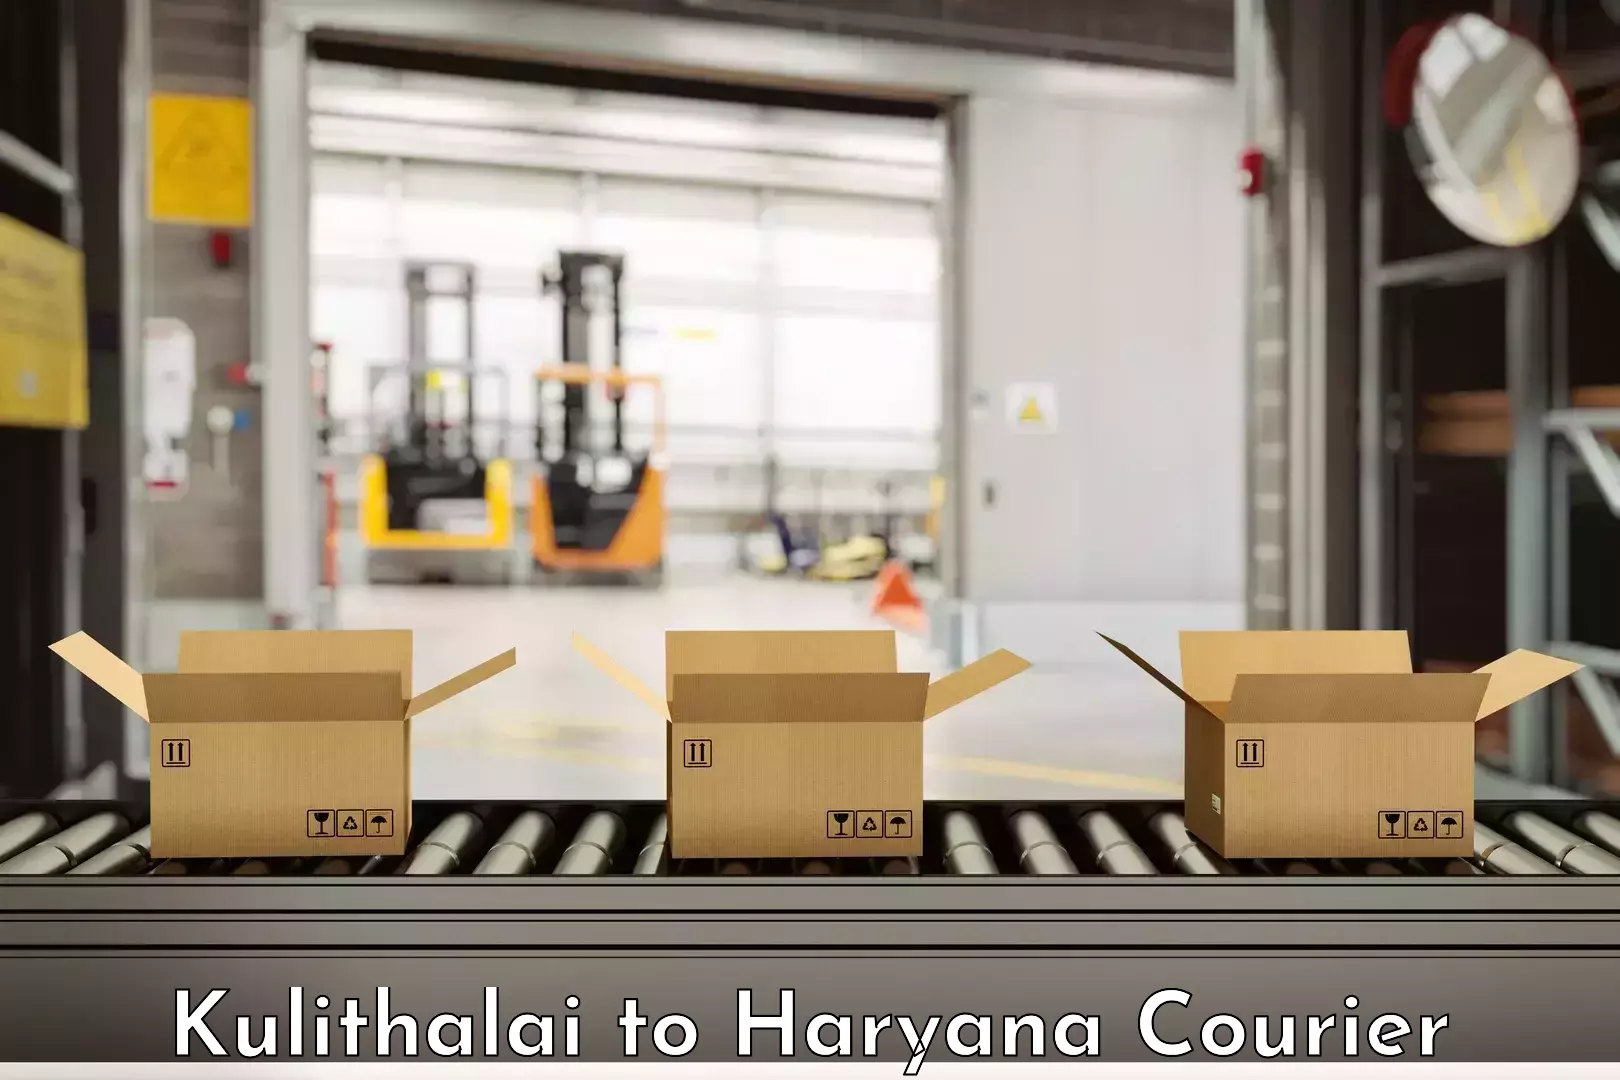 Efficient furniture shifting Kulithalai to Chaudhary Charan Singh Haryana Agricultural University Hisar